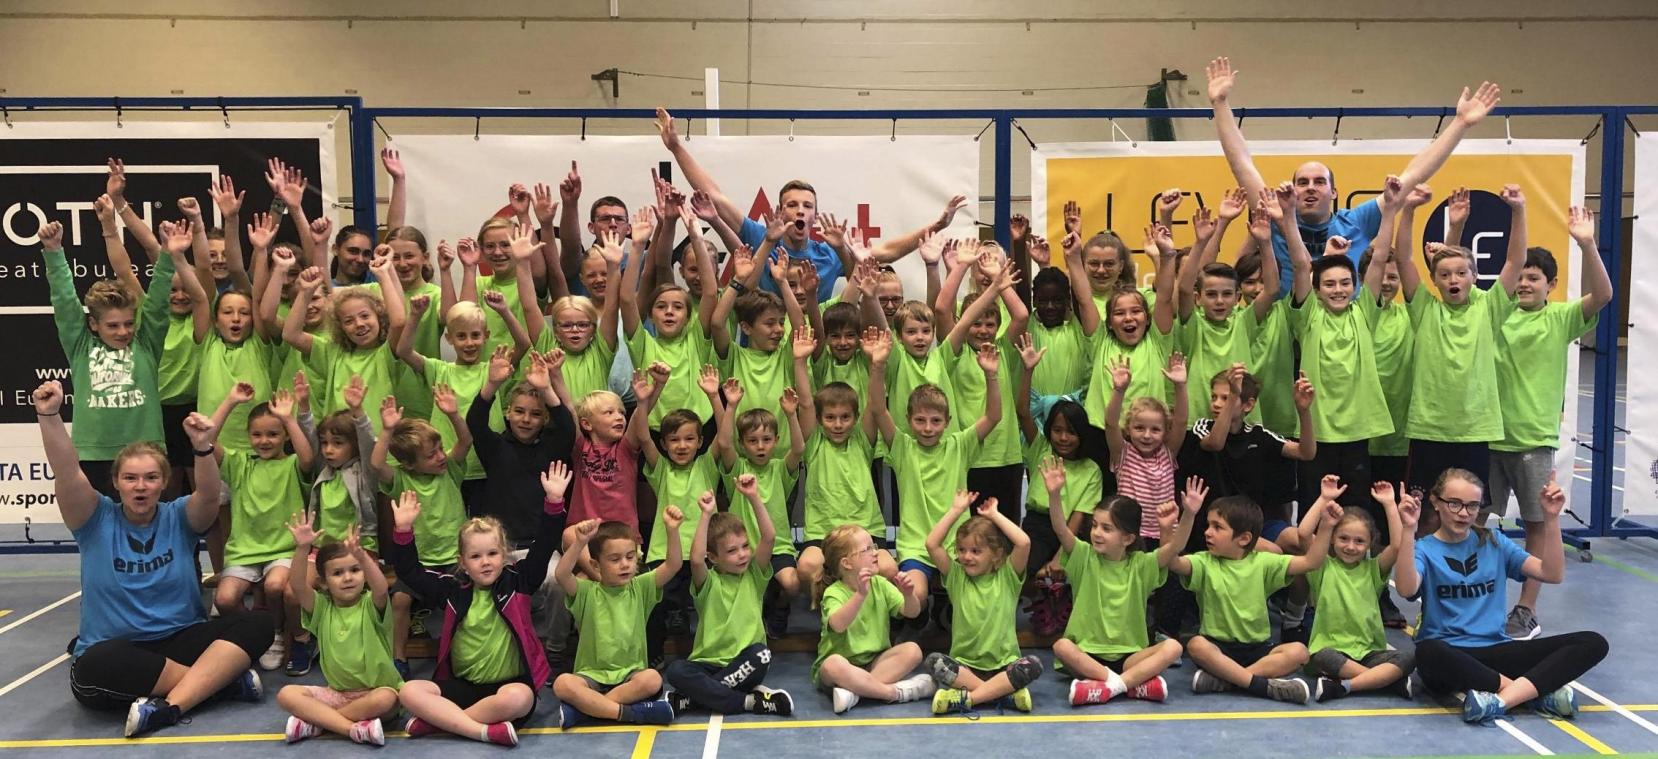 <p>Erfolgreiches 13. Volleyball-Jugendcamp von Sporta-Eupen Kettenis</p>
